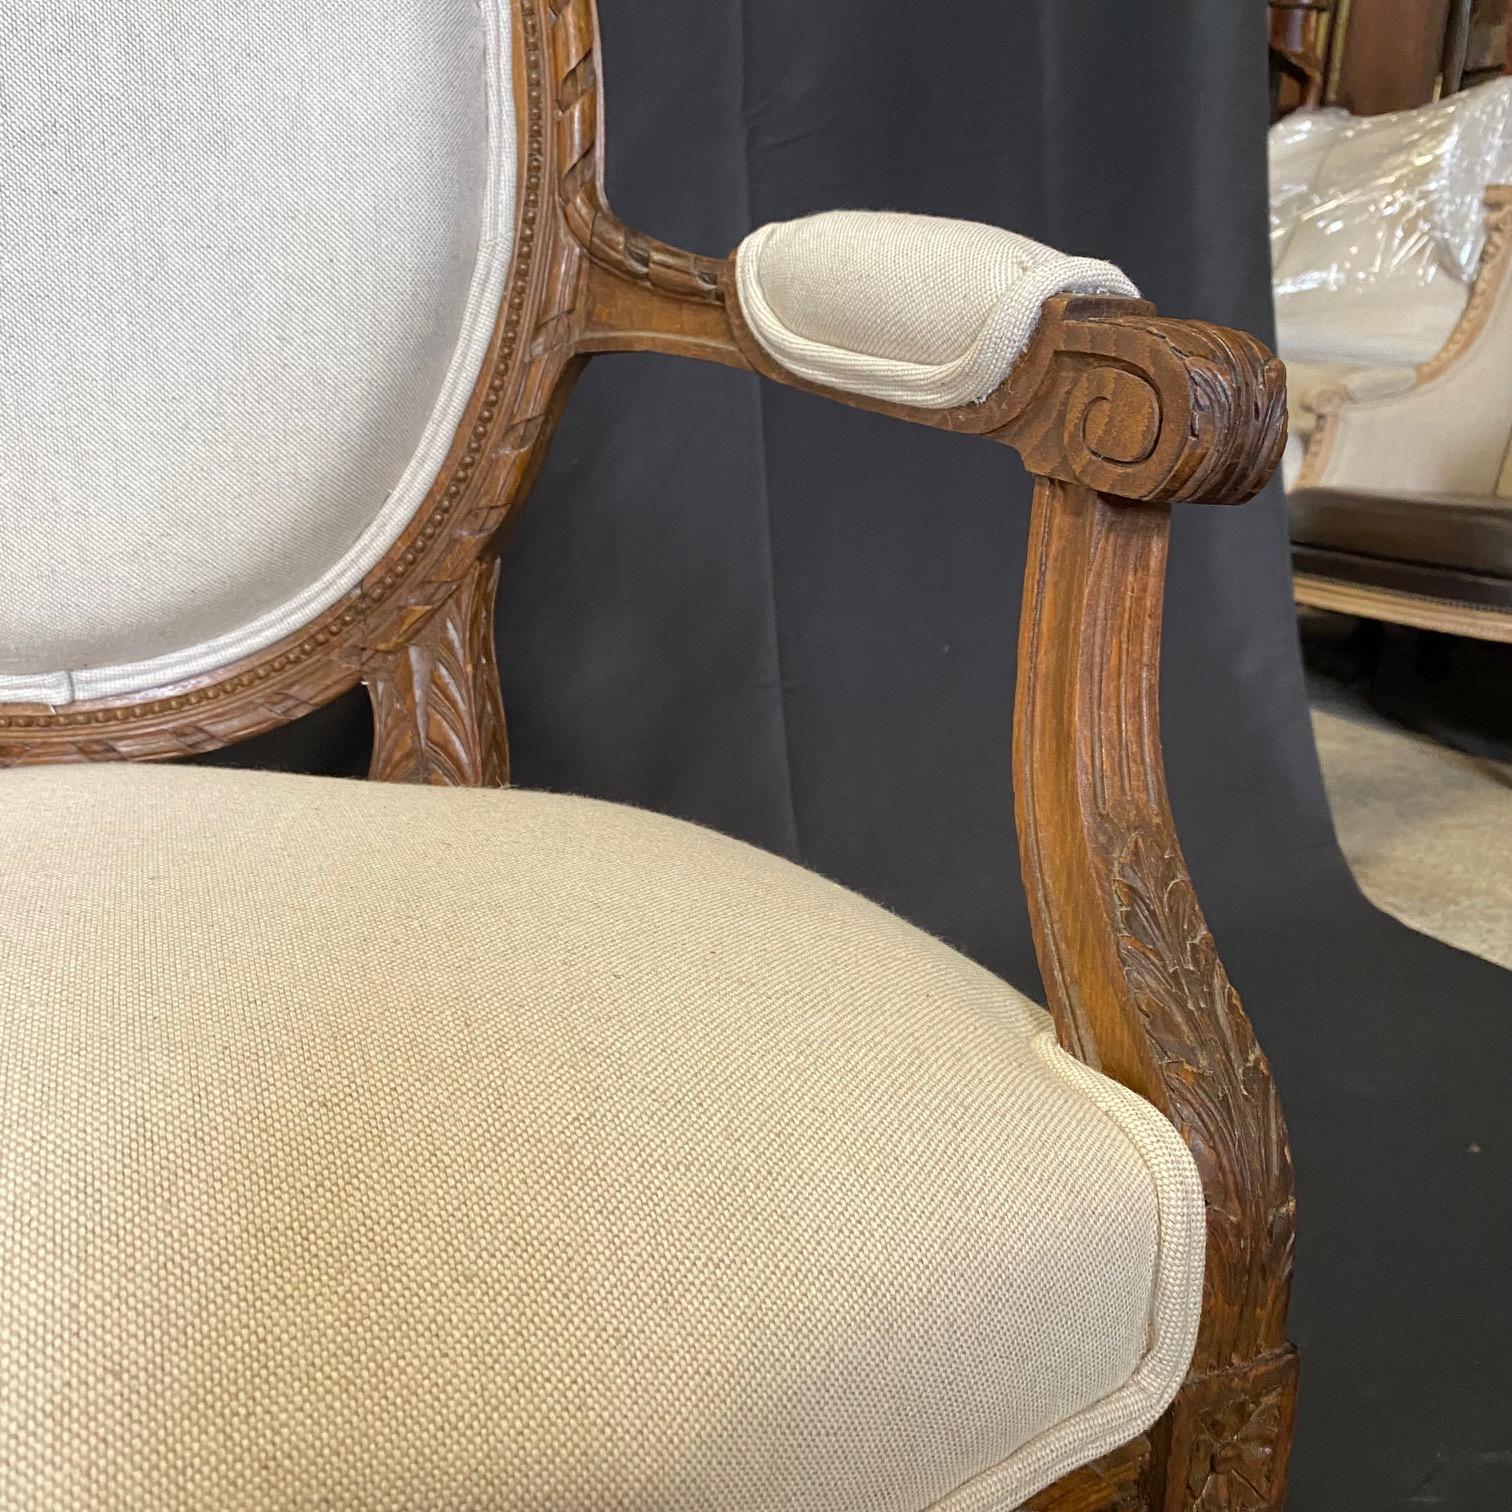 Paire de fauteuils anciens Louis XVI français du 19ème siècle avec une nouvelle tapisserie d'ameublement britannique de haute qualité.  Magnifiquement sculpté en noyer avec une patine fantastique. Chaque chaise est surélevée par des pieds cannelés